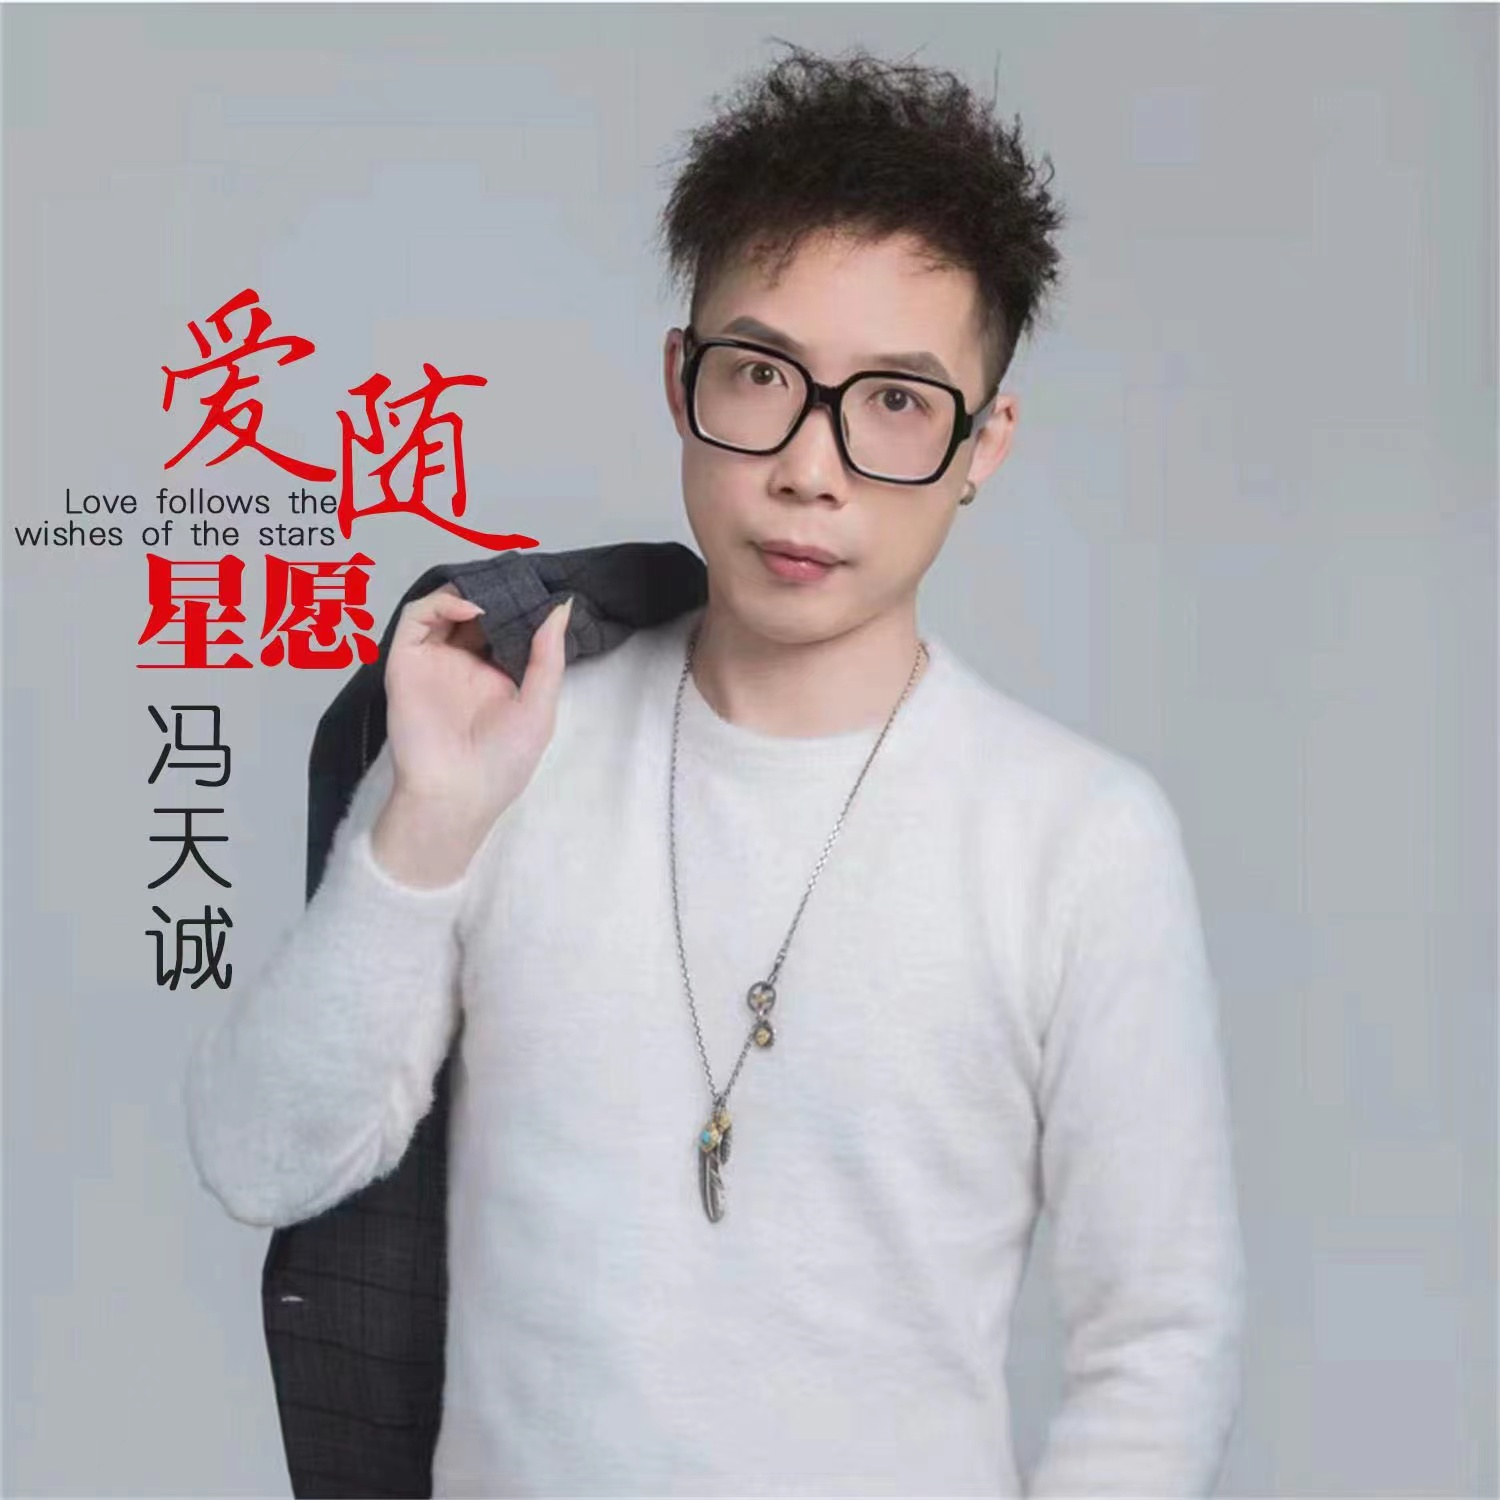 歌手冯天诚最新力作新歌《爱随星愿》全网首发